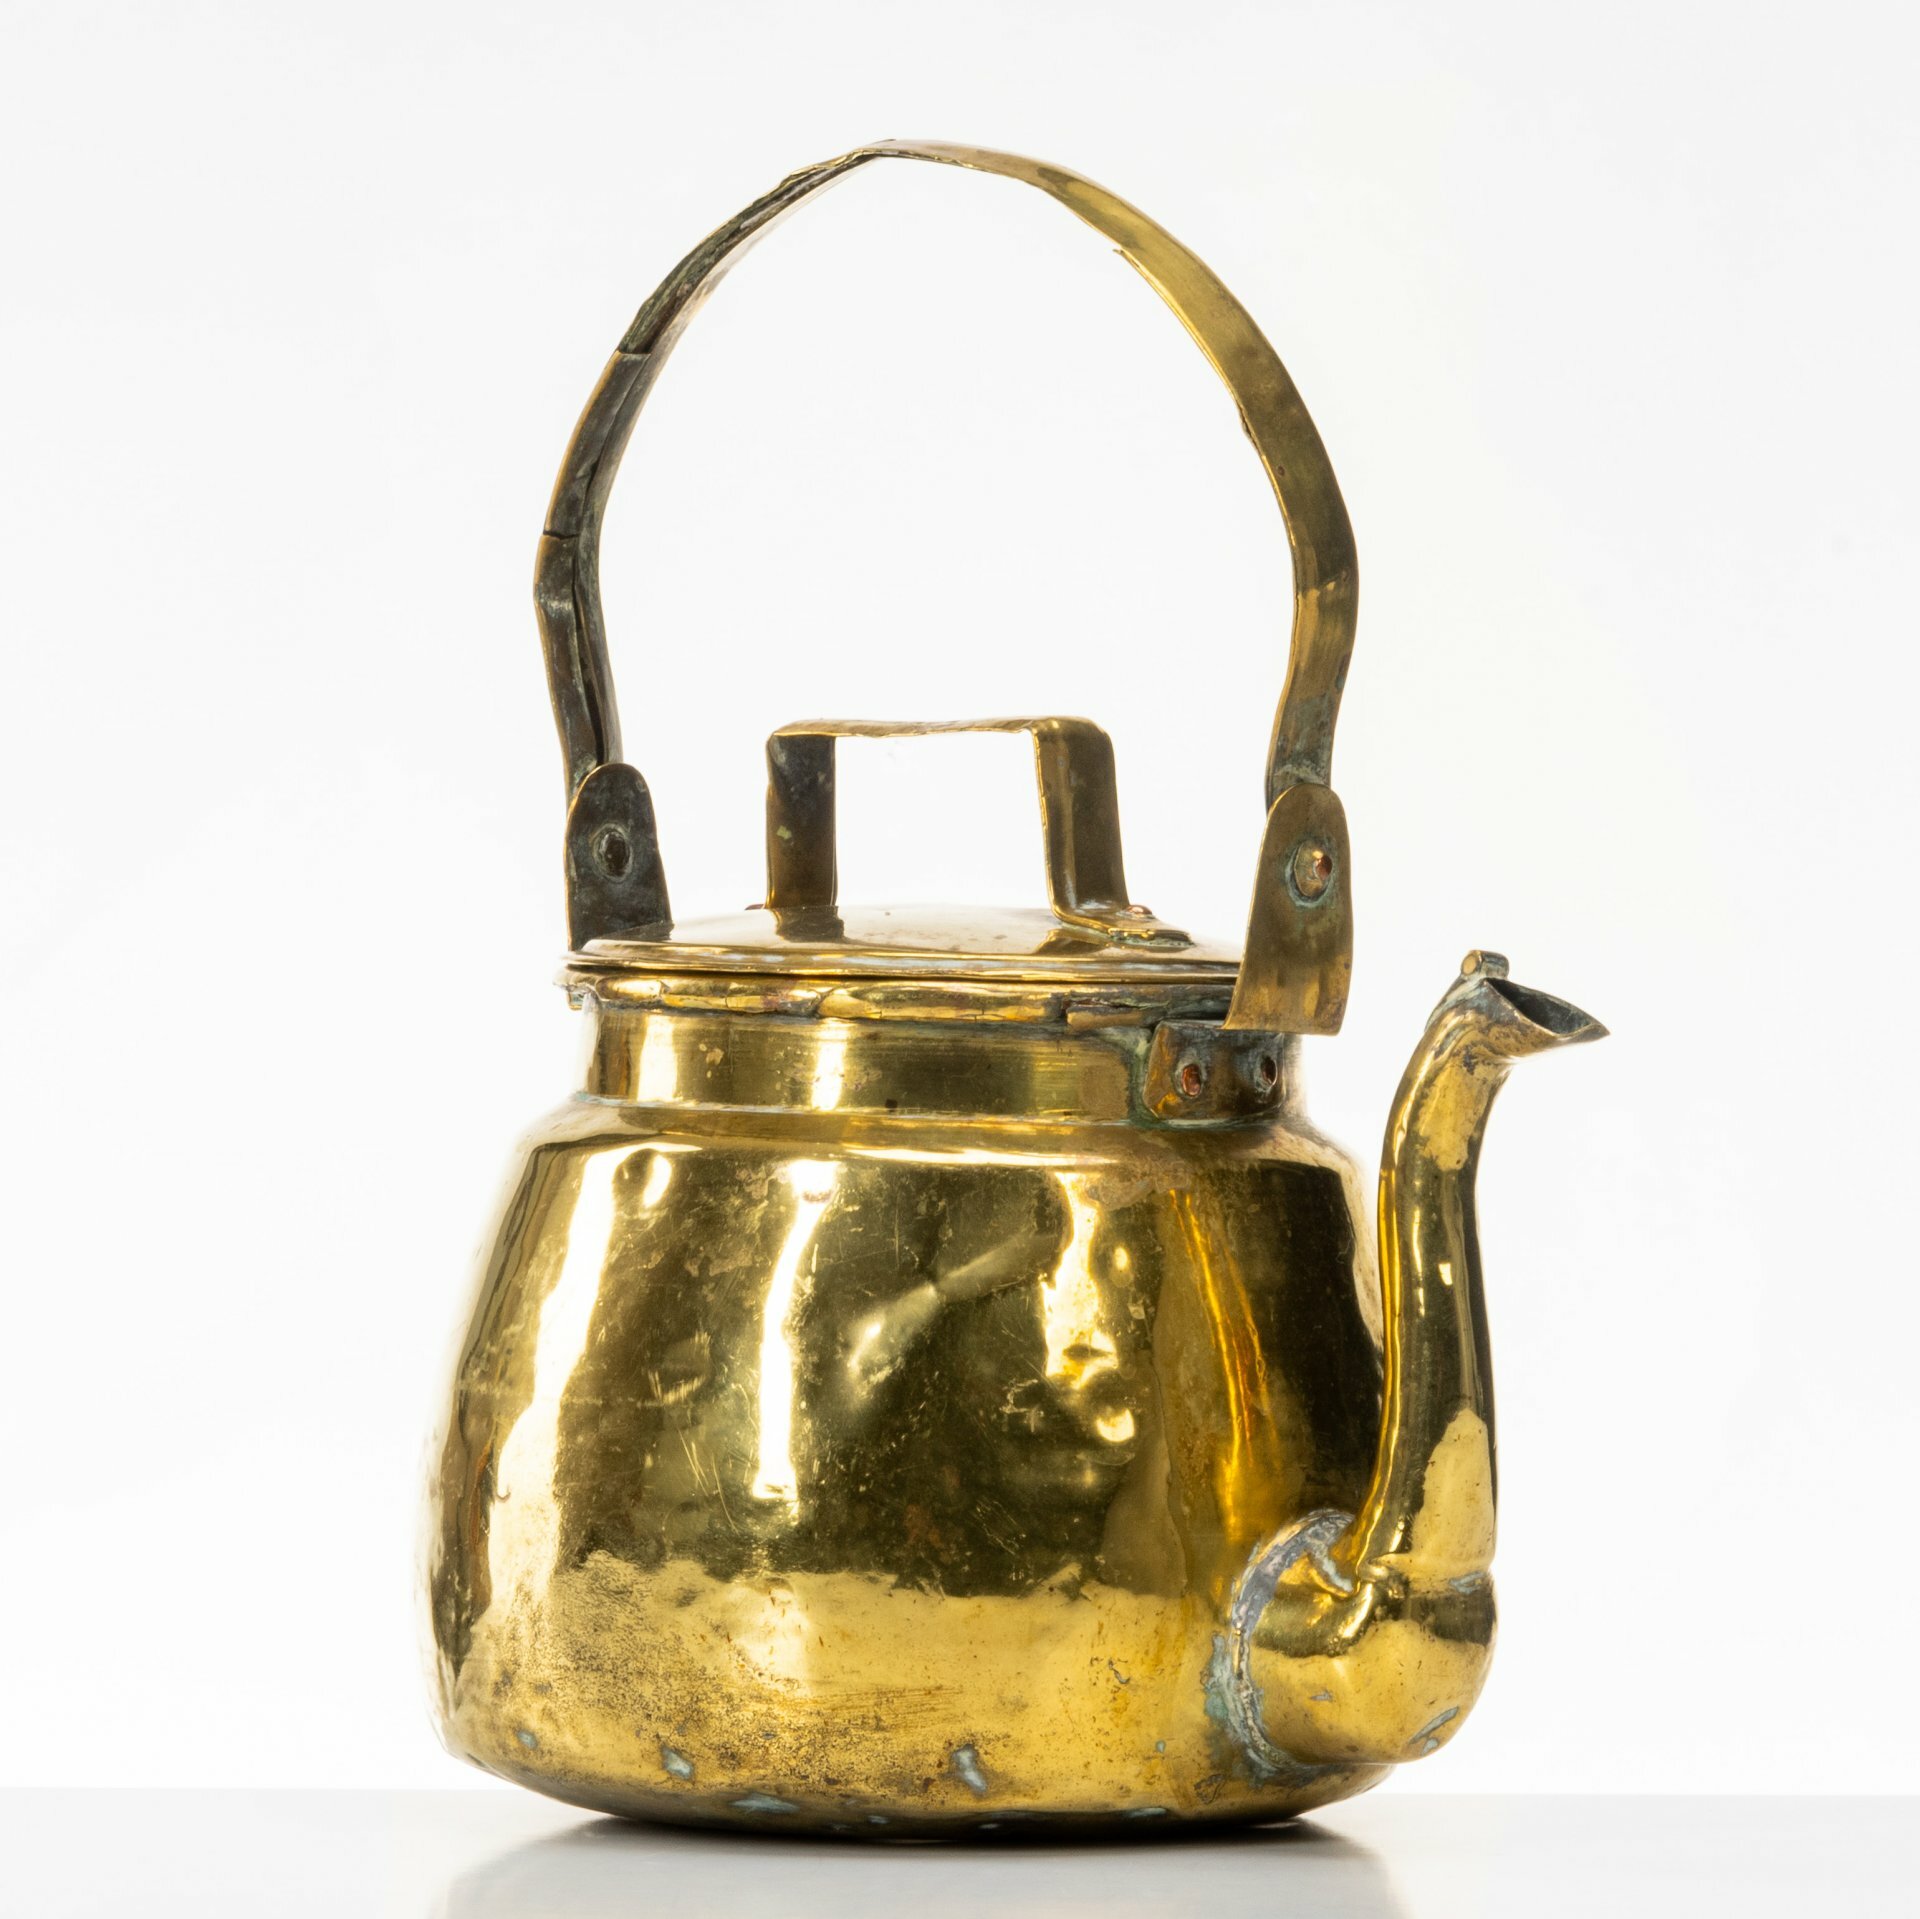 Чайник для кипячения, медь, латунь, Бельгия, 1920-1940 гг.